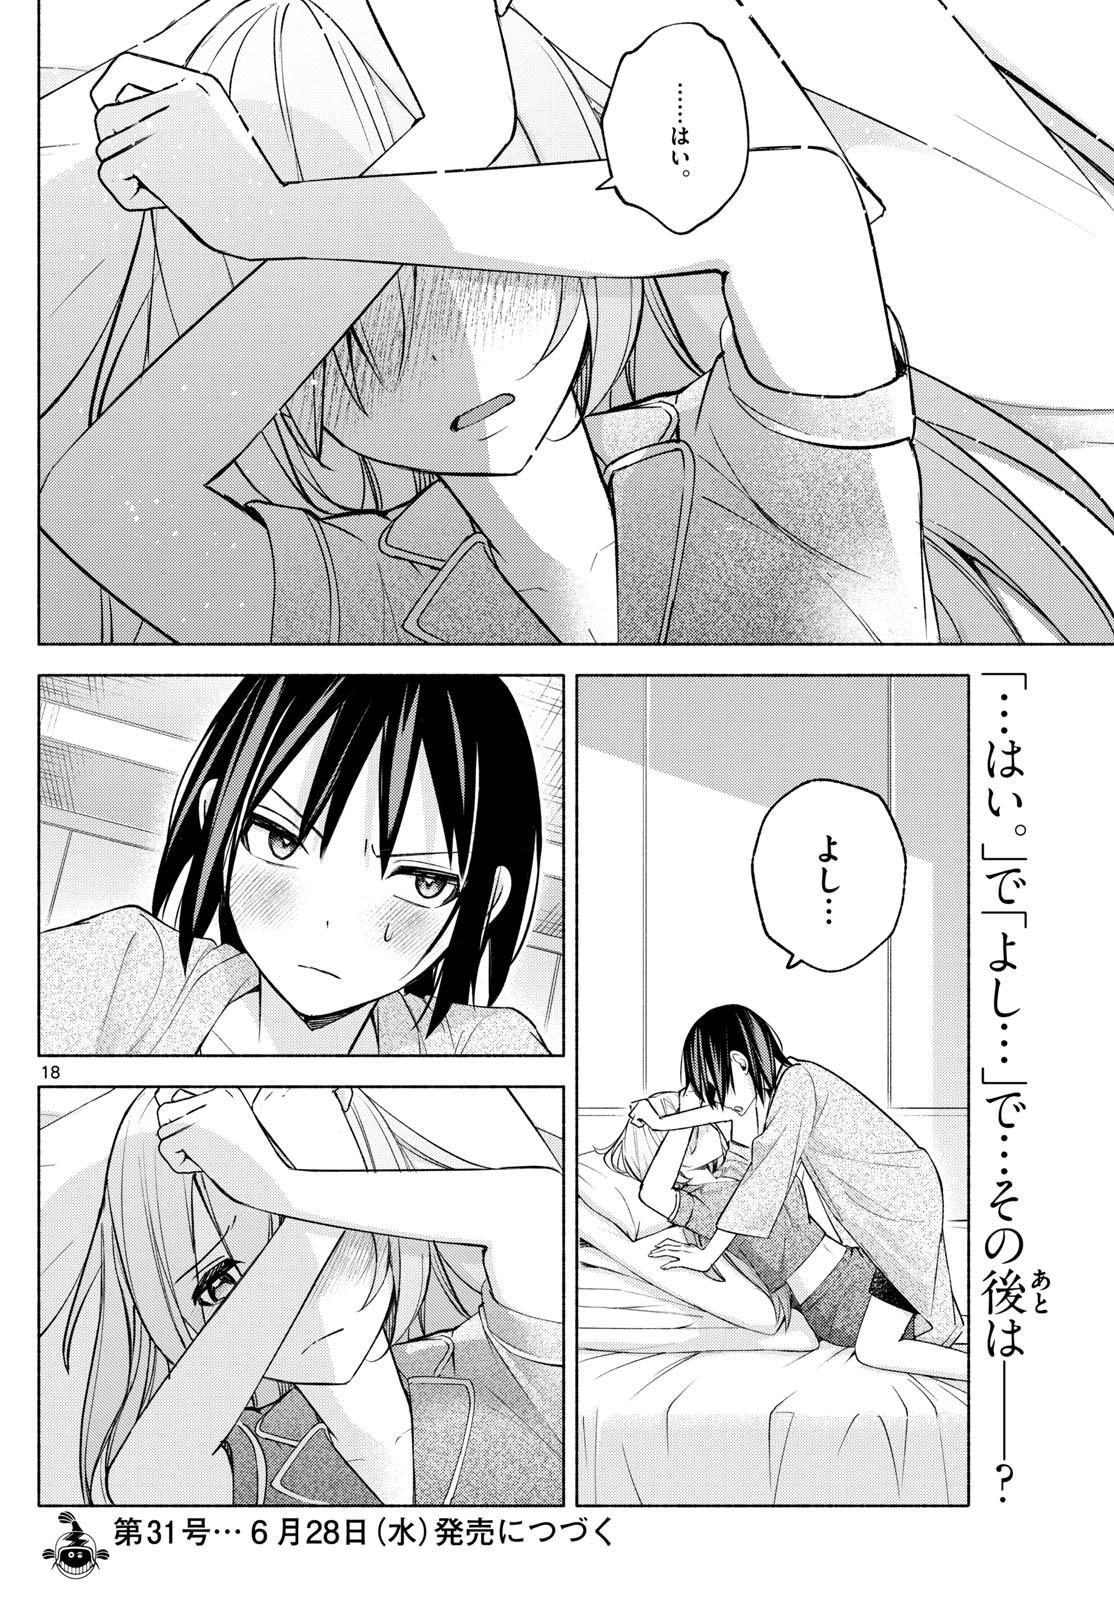 Kimi to Warui Koto ga Shitai - Chapter 033 - Page 18